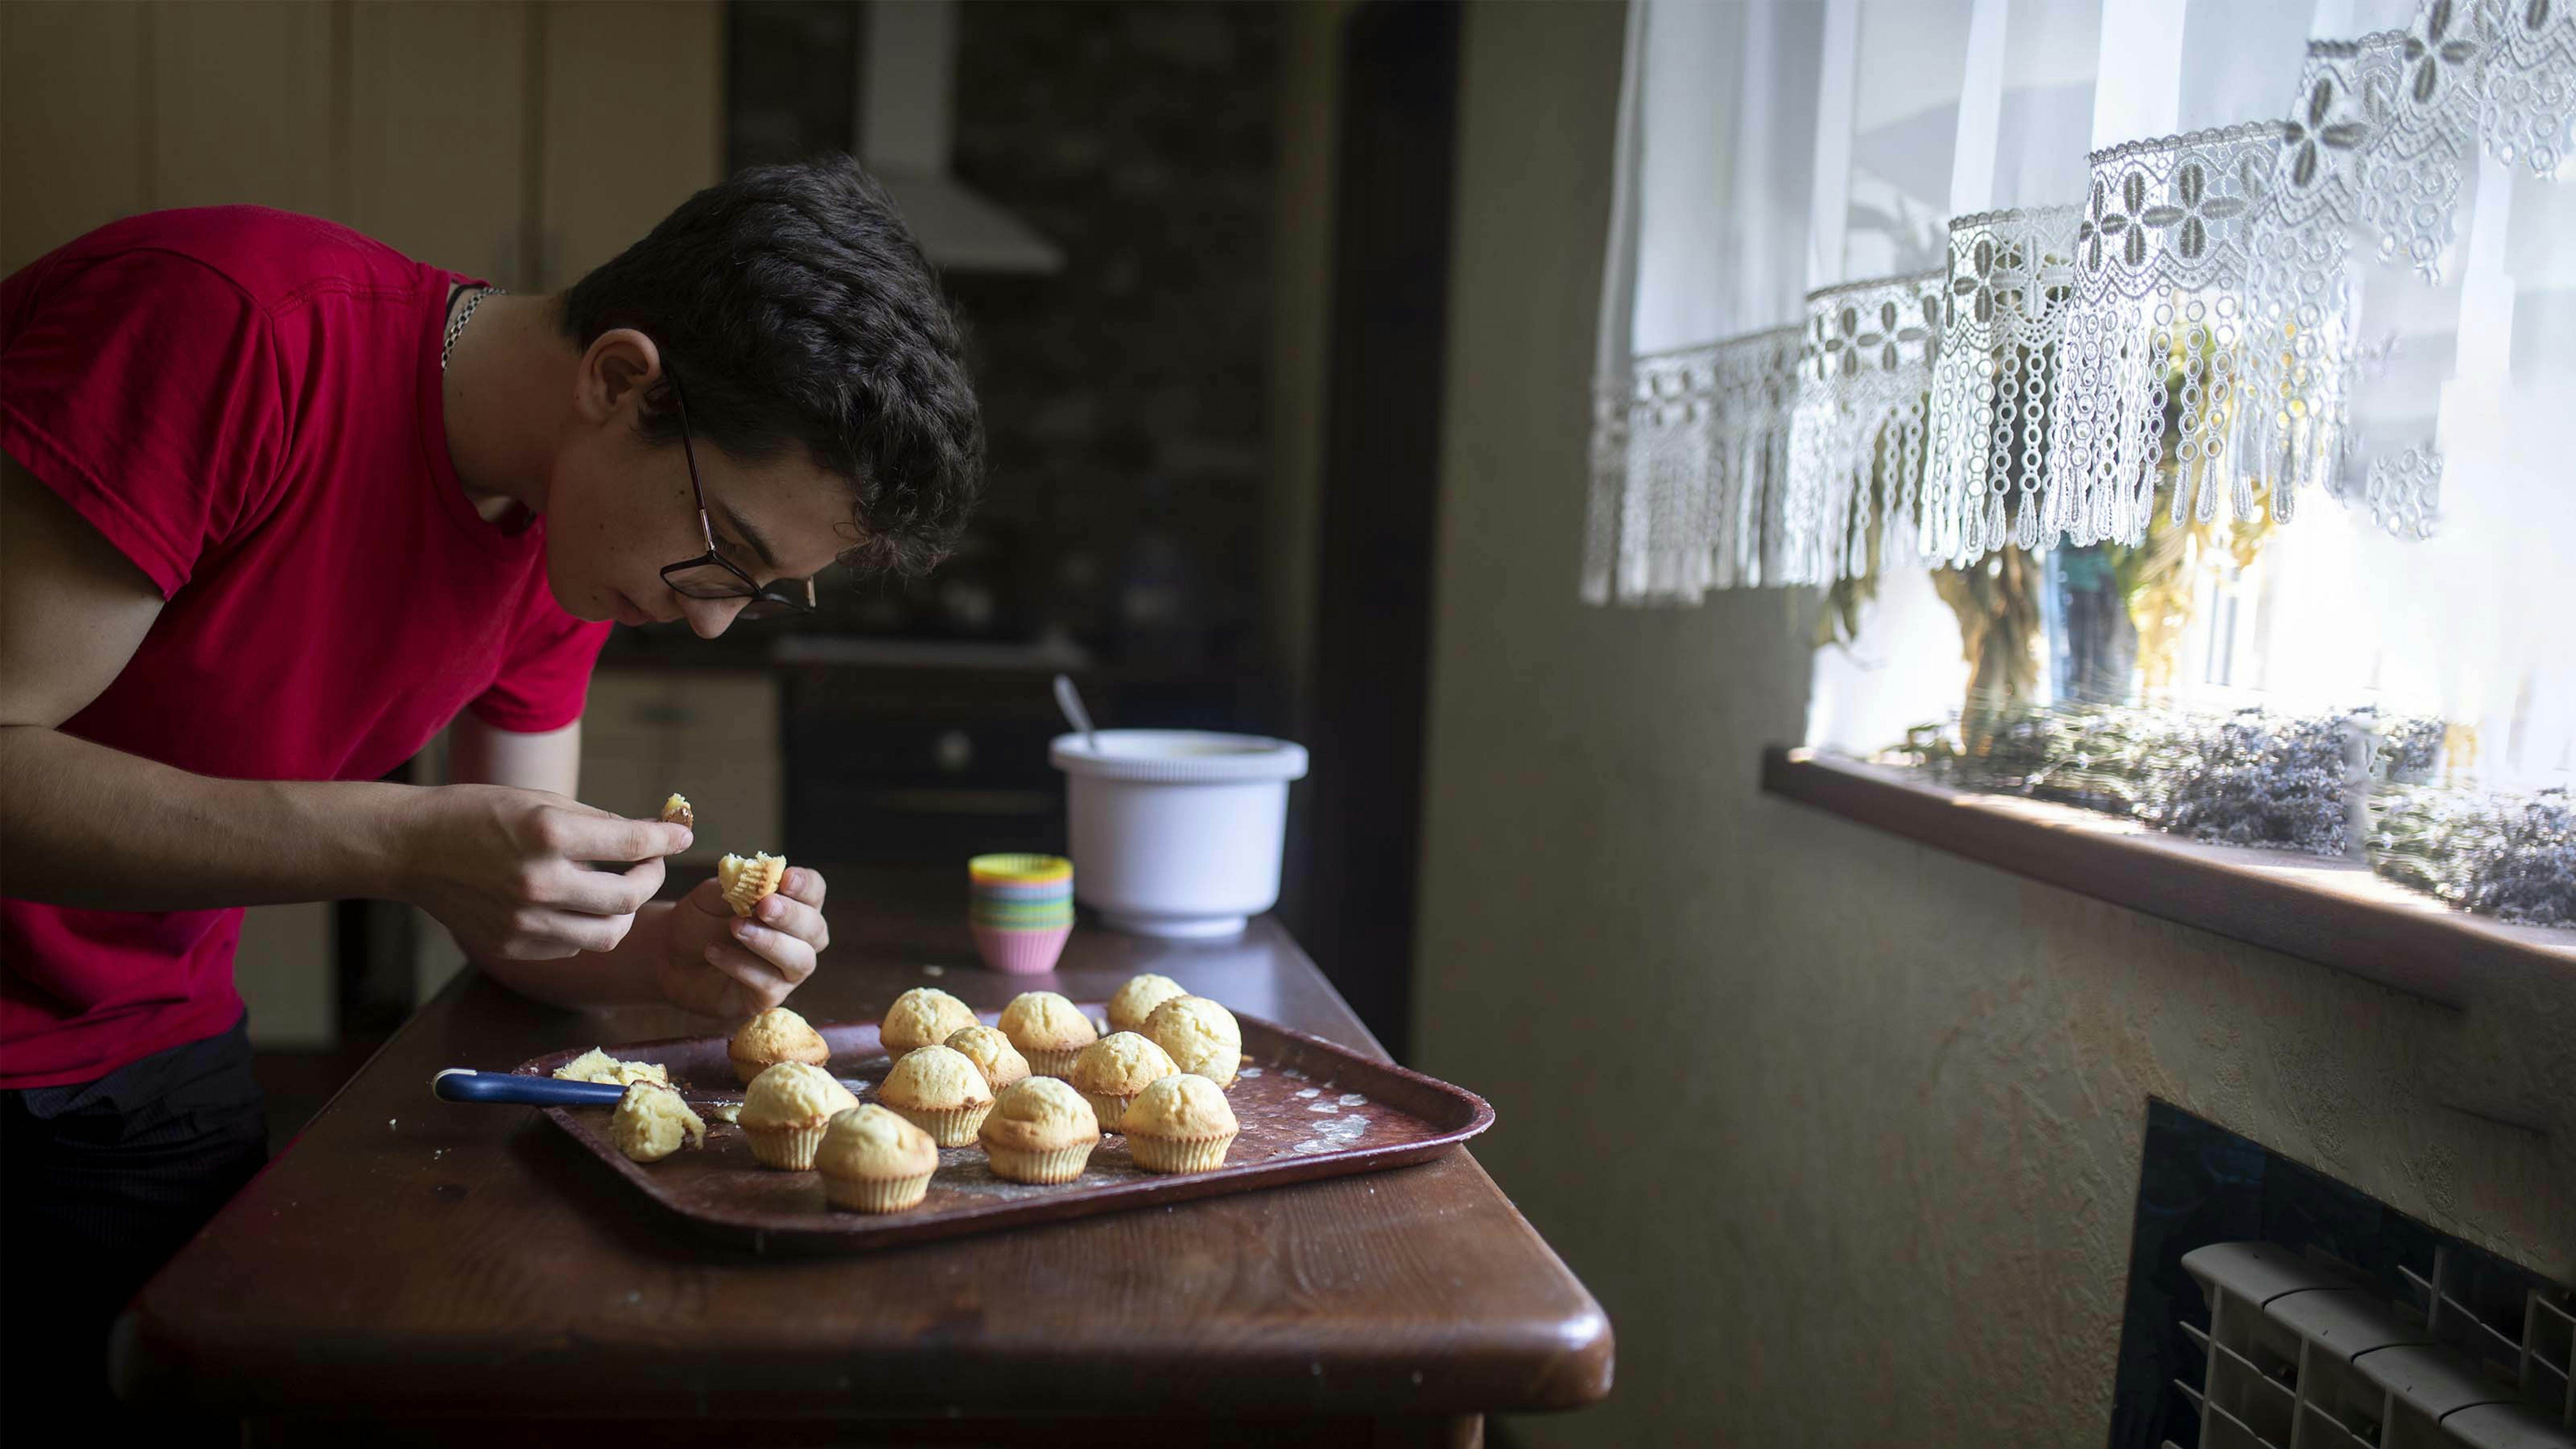 Ilia, 15 anni, prepara dei dolci per la sua famiglia: "Cerchiamo di tenerci allegri a vicenda"